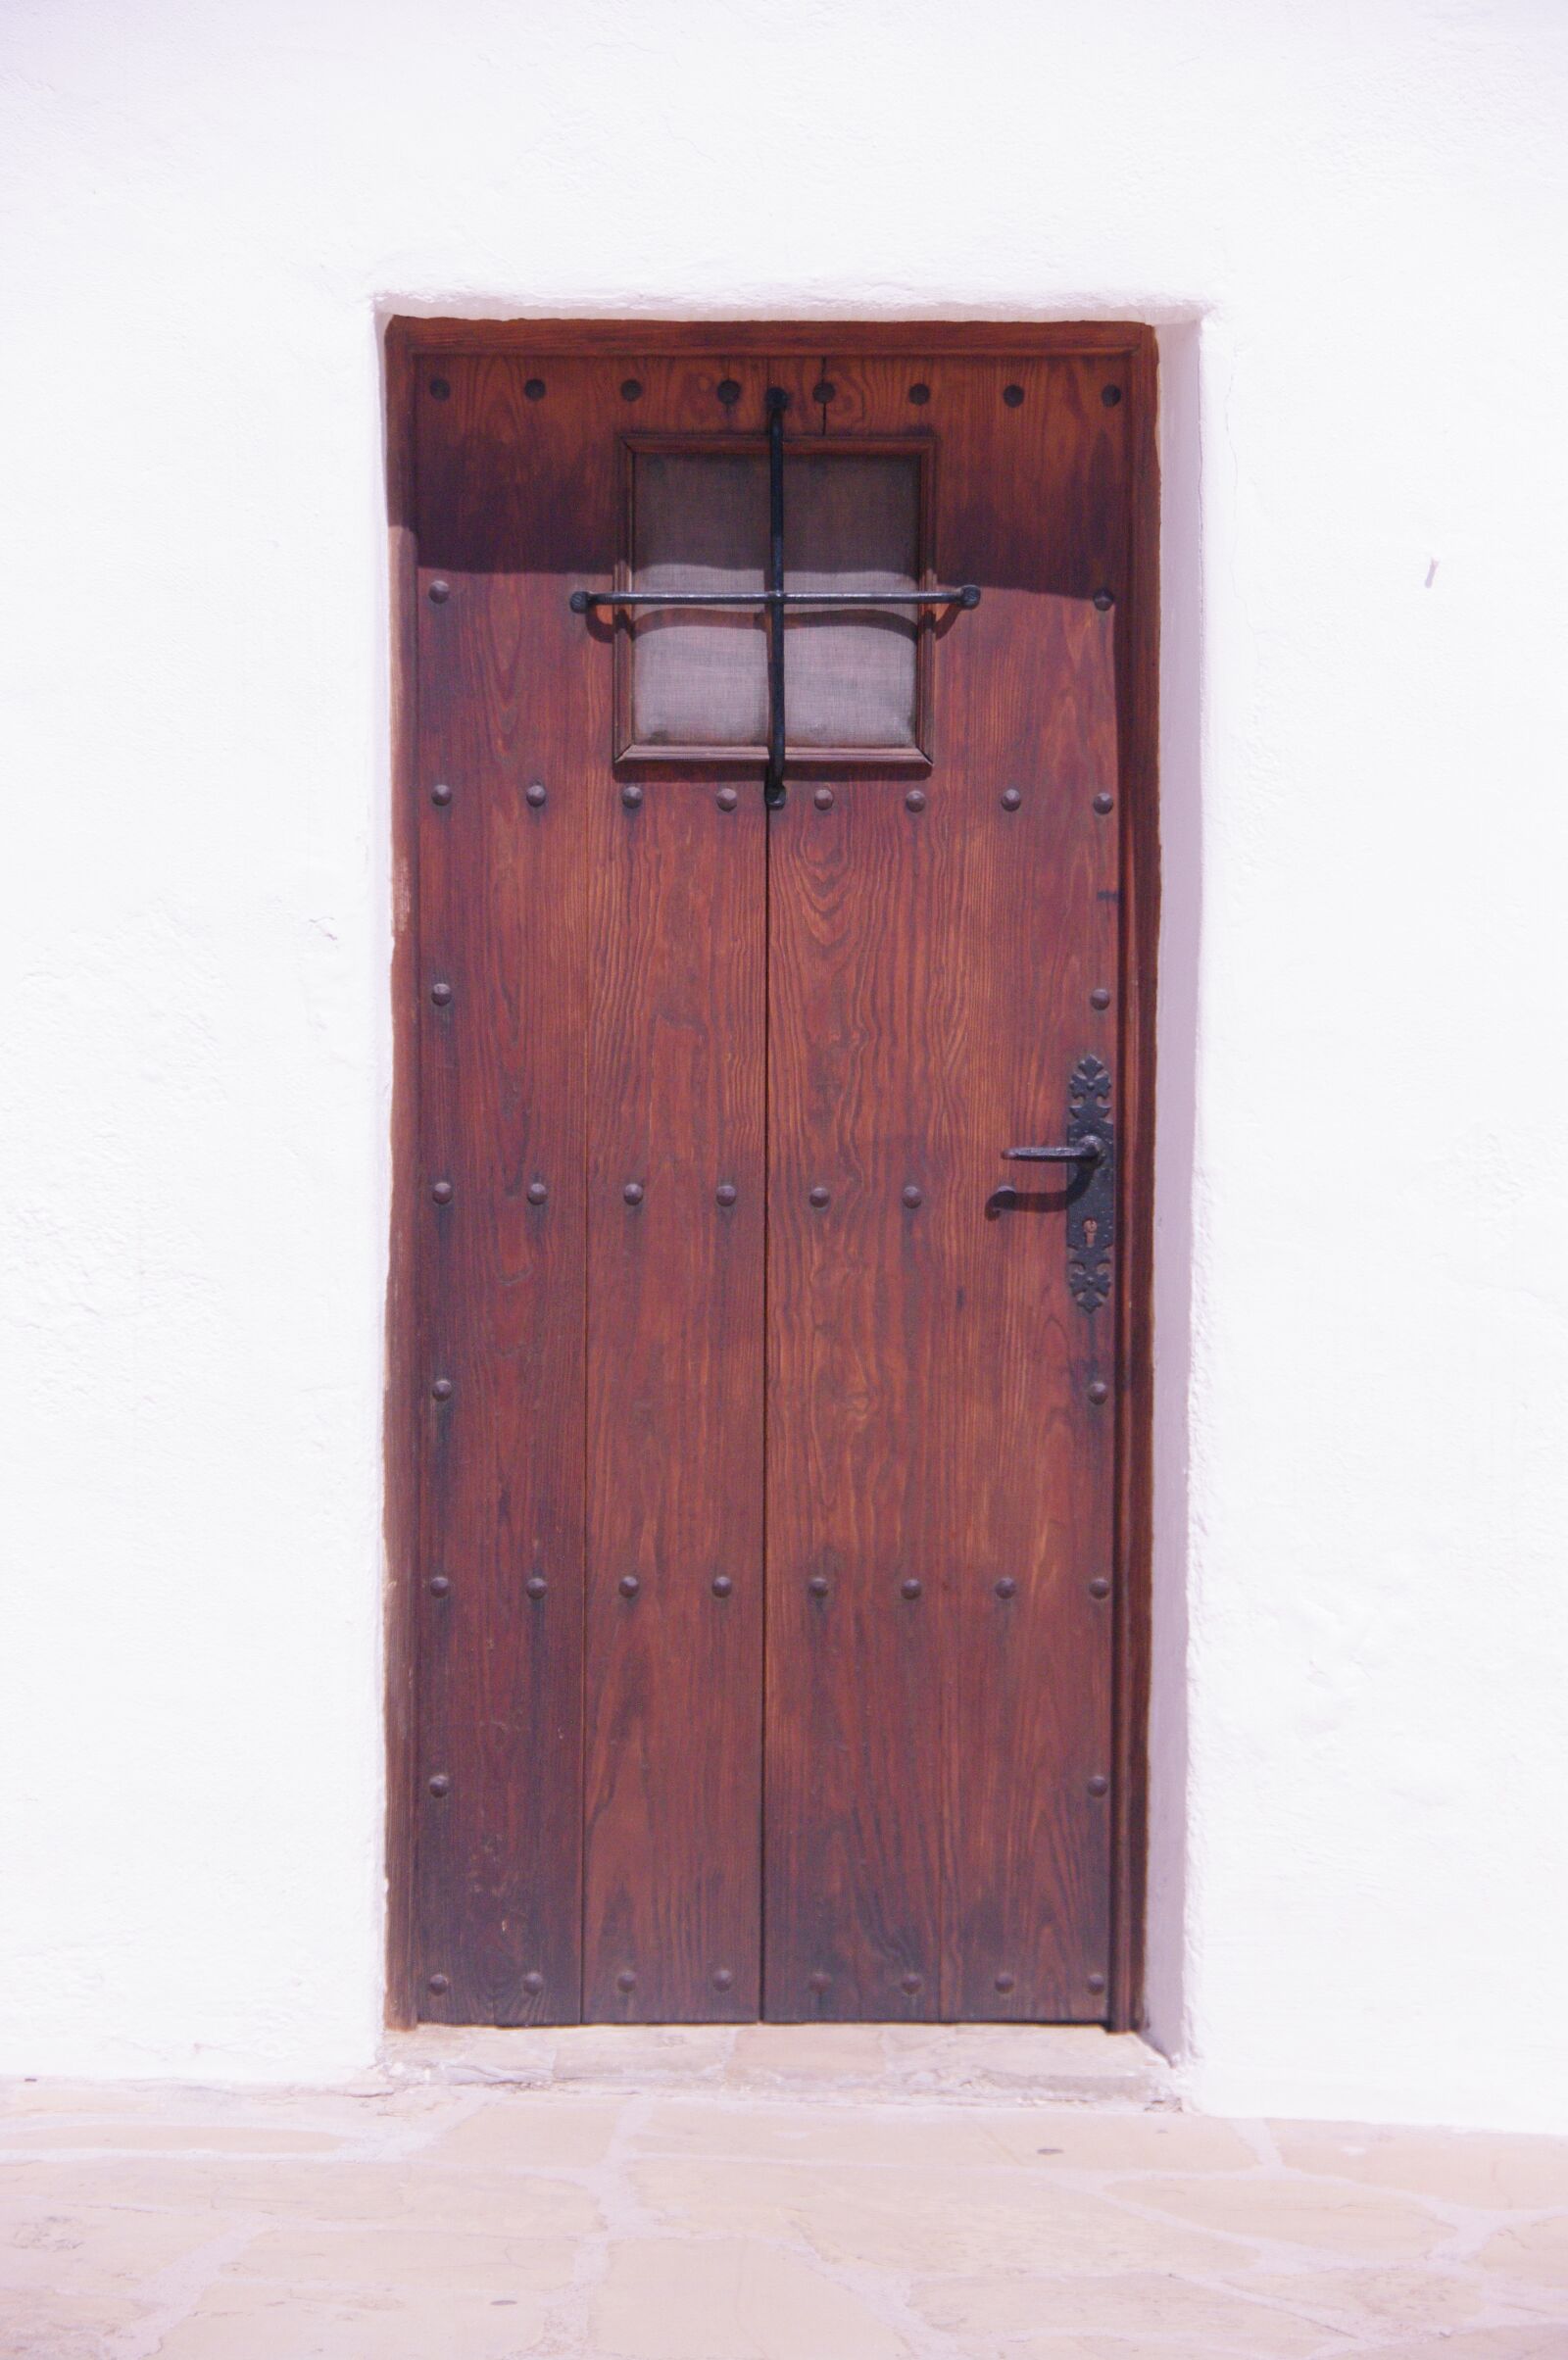 Pentax K20D sample photo. Door, window, wood photography